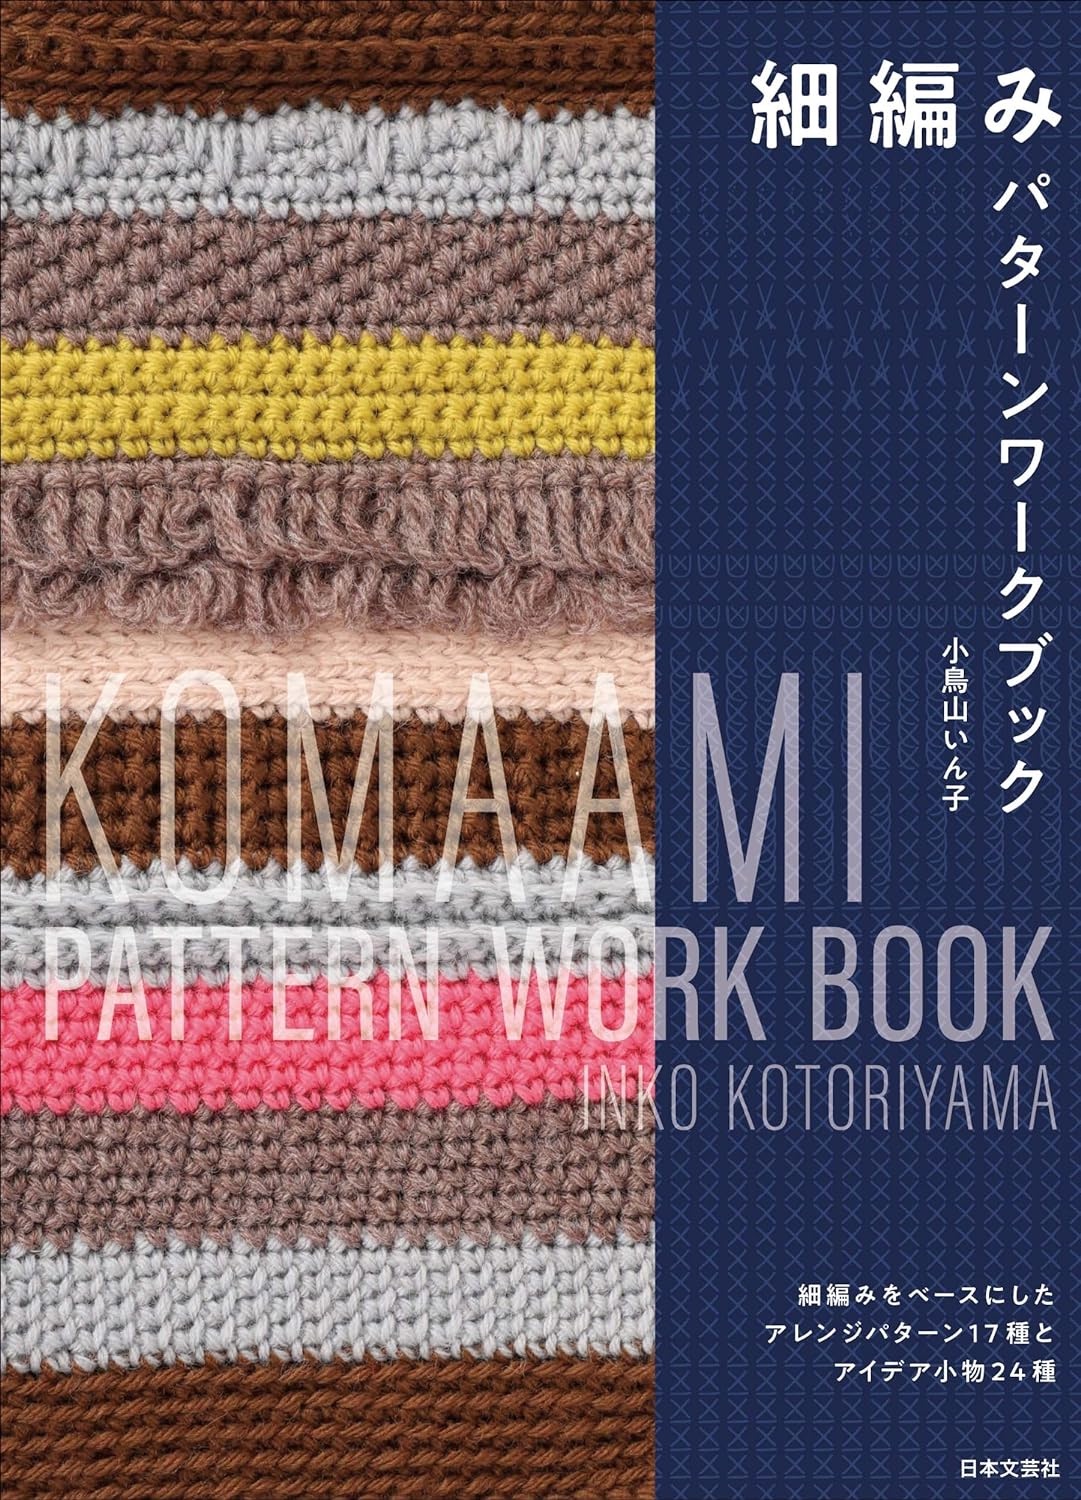 🌲毛線森林🌷日文編織書 - 細編み パターンワークブック: 細編みをベースにしたアレンジパターン17種とアイデア小物